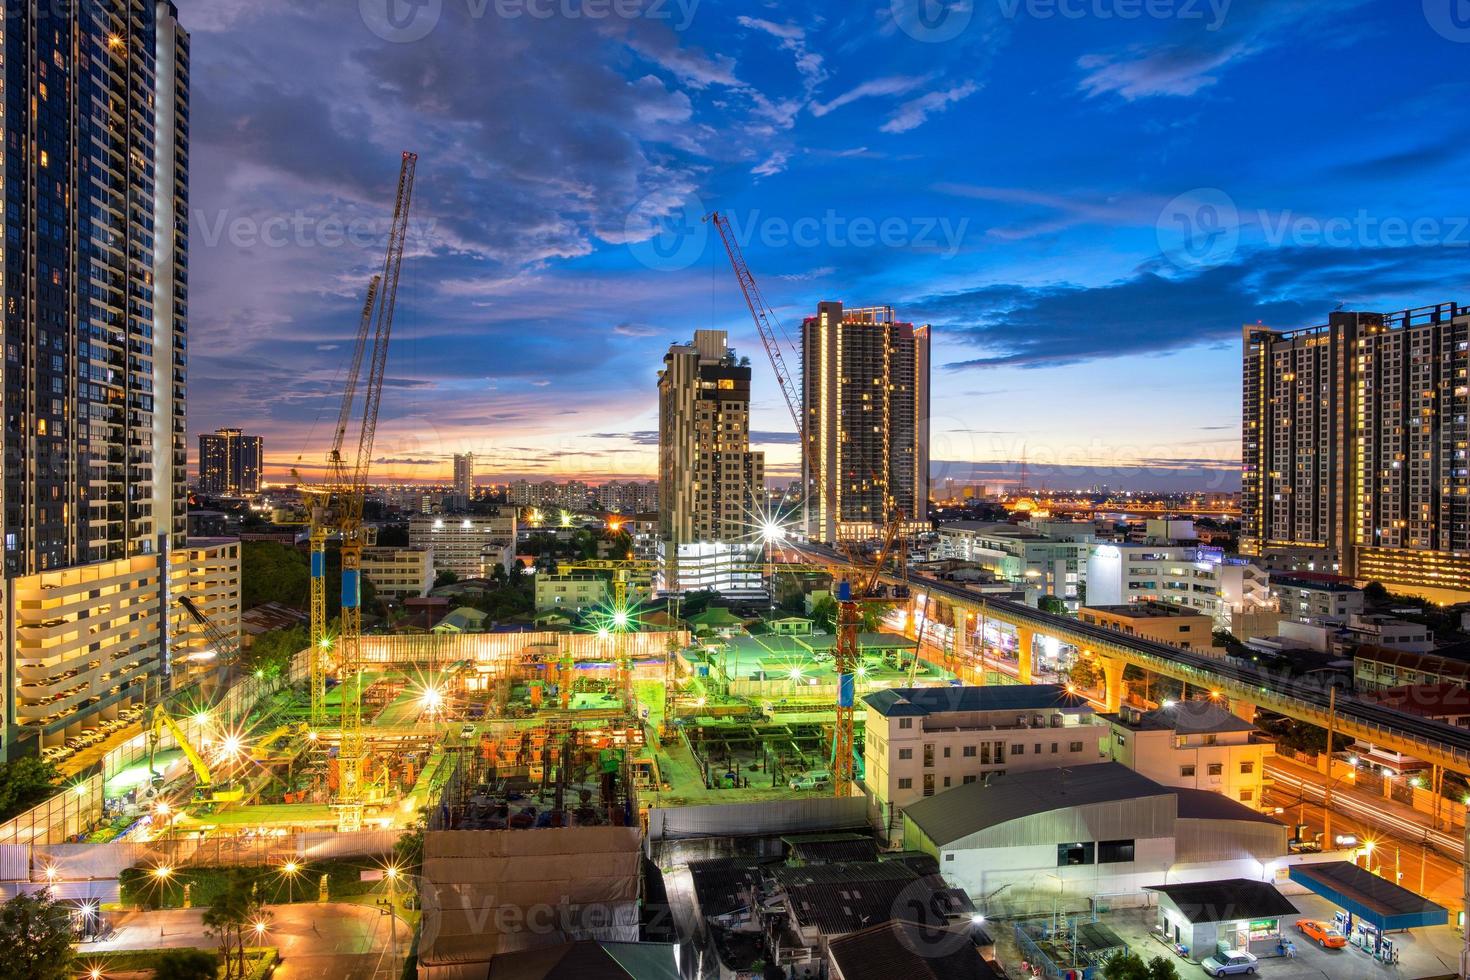 cantiere con retroescavatore e autocarro con cassone ribaltabile impegnato all'inizio della costruzione di un nuovo complesso progetto di costruzione in thailandia. foto